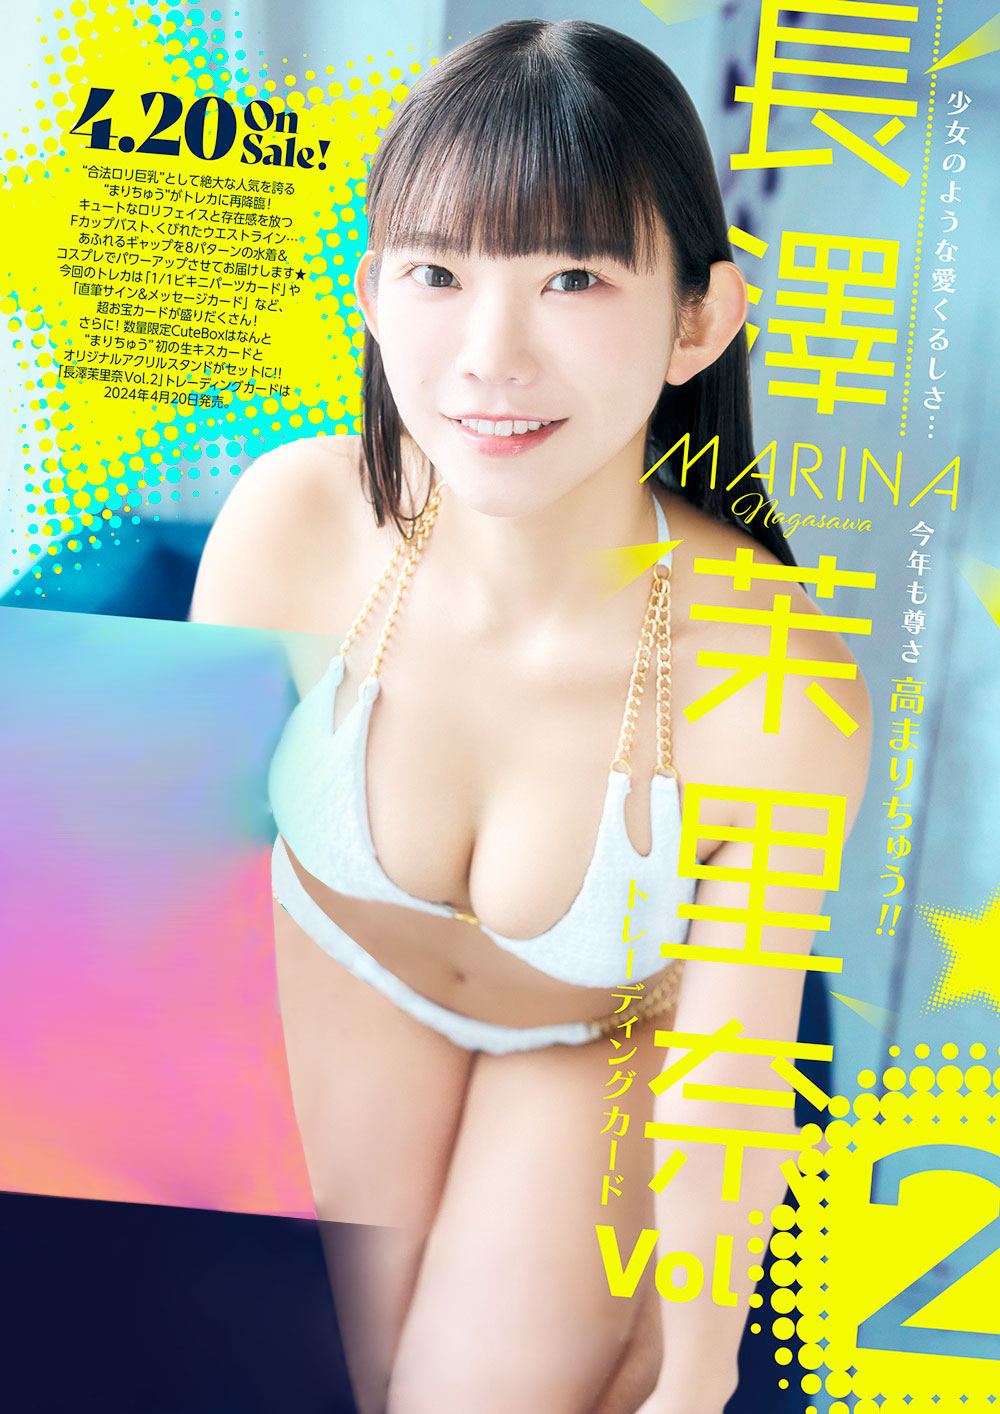 Marina Nagasawa Vol. 2 Trading Card Hits